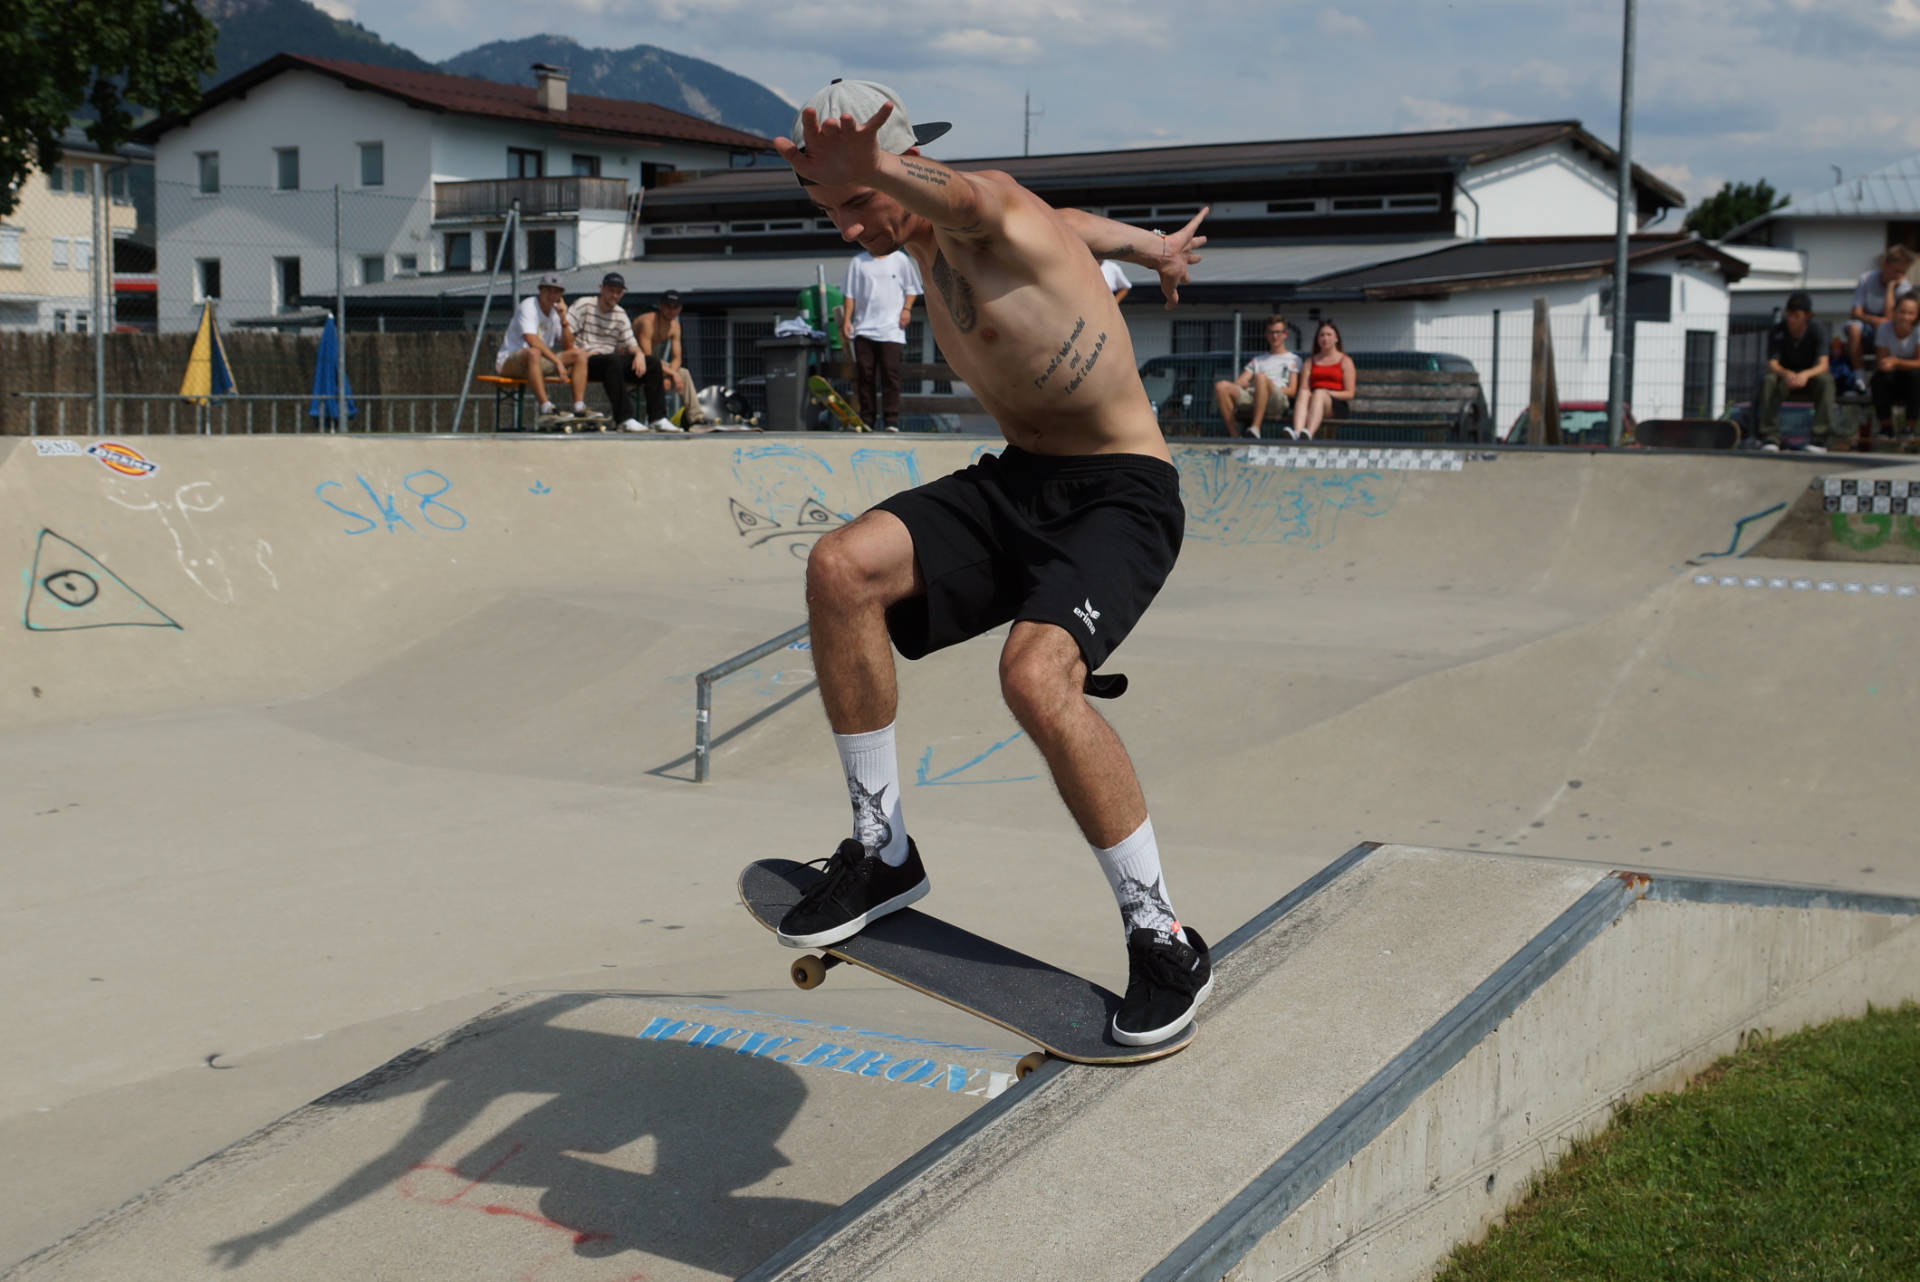 skateboardheadz st johann in tirol kgt 2019 finale 00047